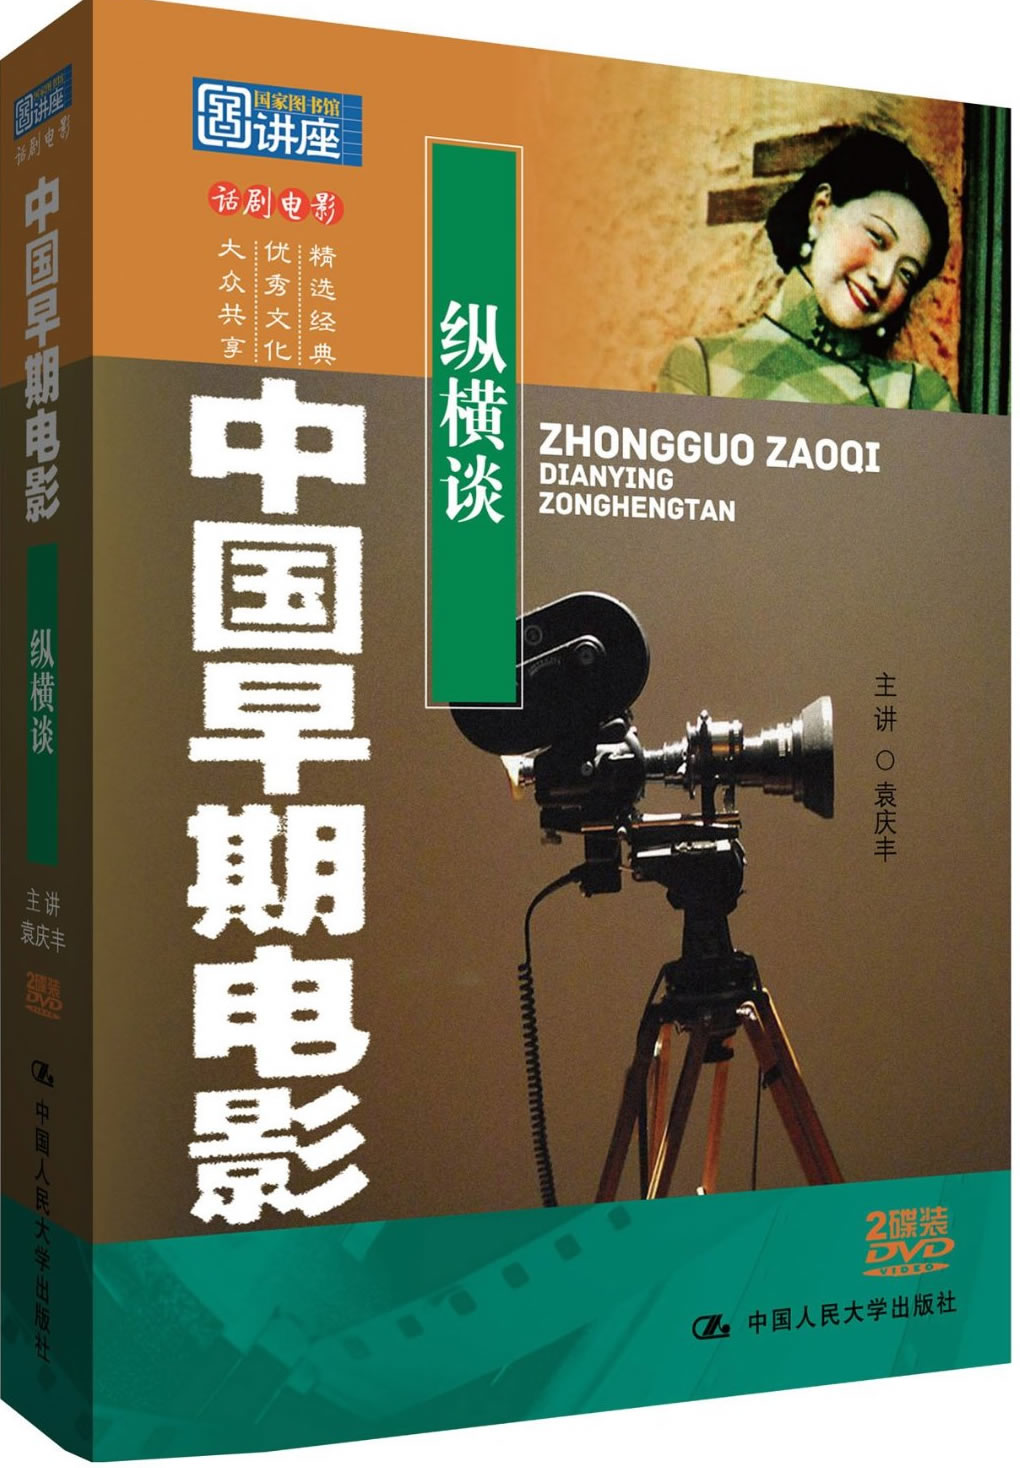 Zhongguo Zaoqi Dianying Zonghengtan (documentary on early Chinese cinema)<br>ISBN:978-7-88702-940-9, 9787887029409